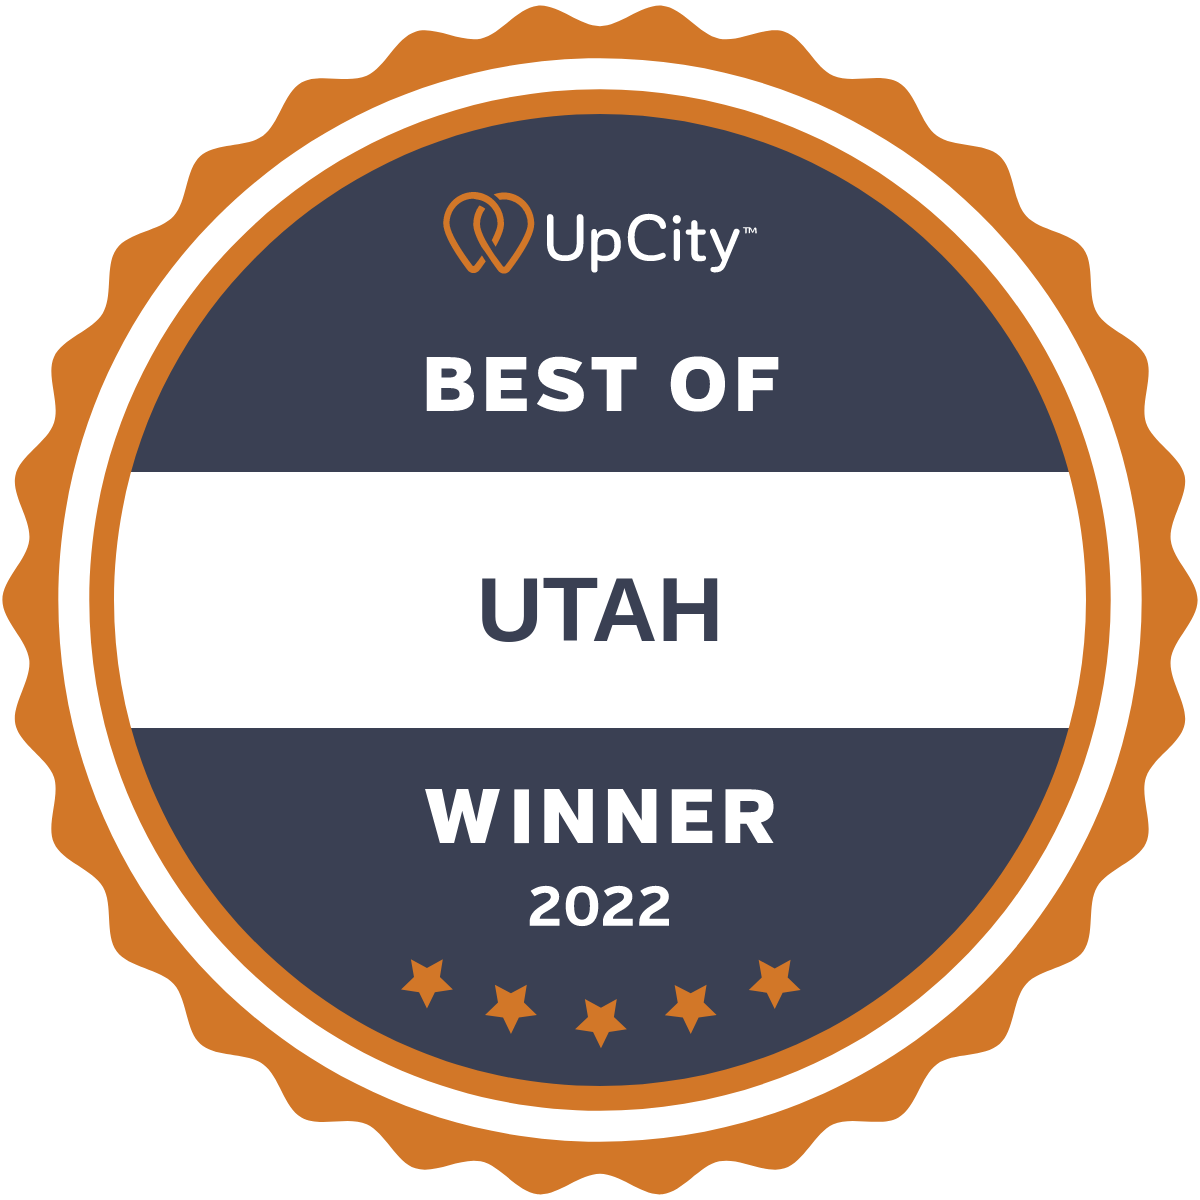 UpCity Best of Utah Winner 2022 Award